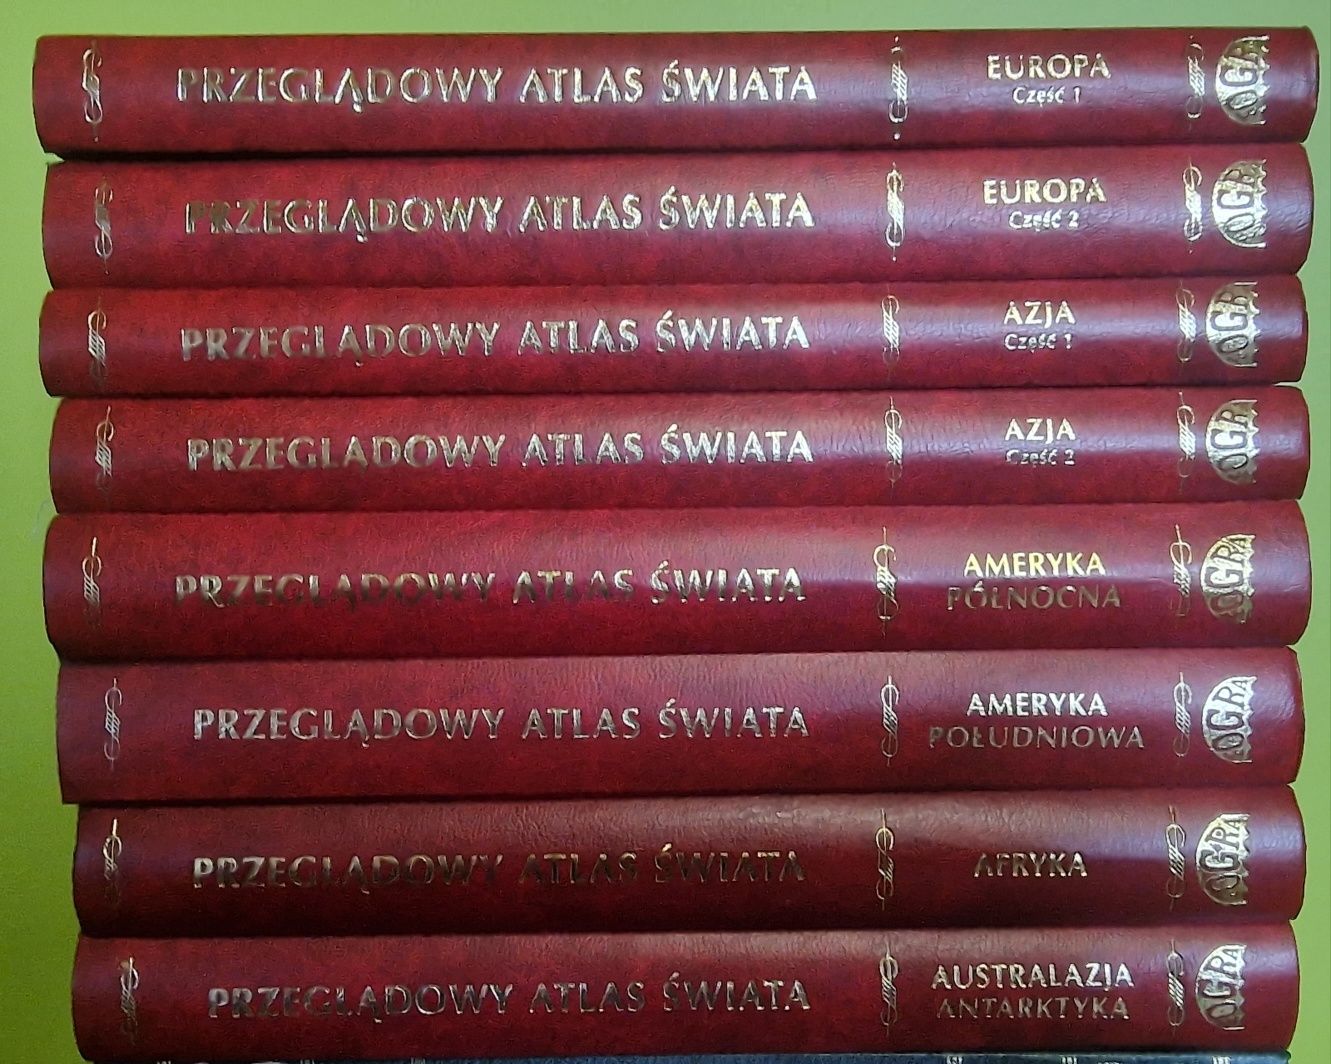 Przeglądowy Atlas Świata 8 tomów - 150